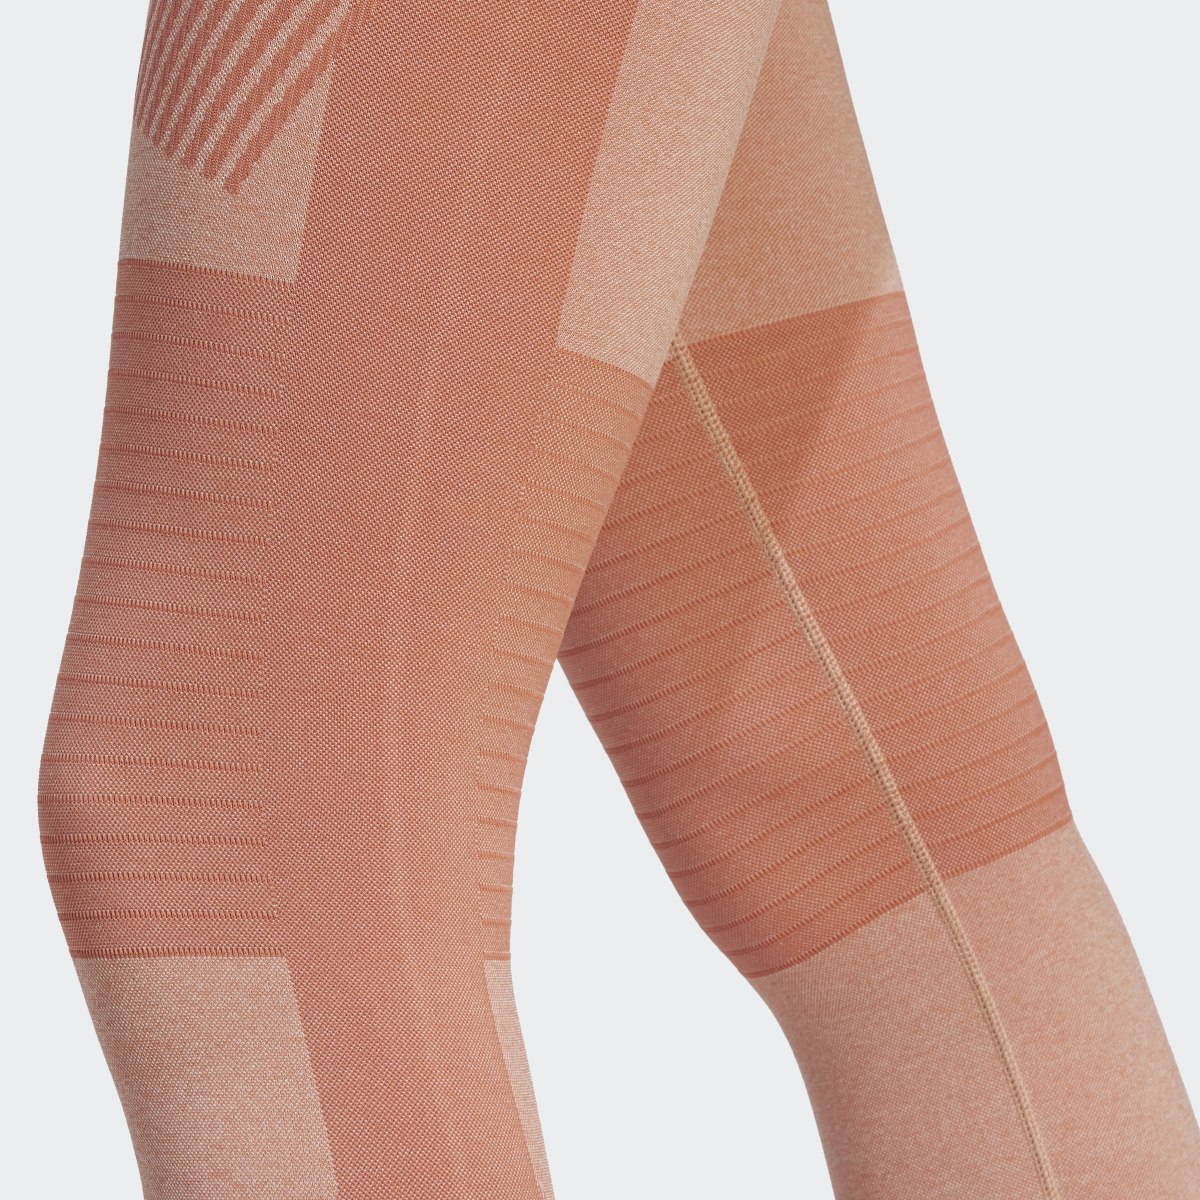 Adidas by Stella McCartney TrueStrength Yoga 7/8 Tight. 6